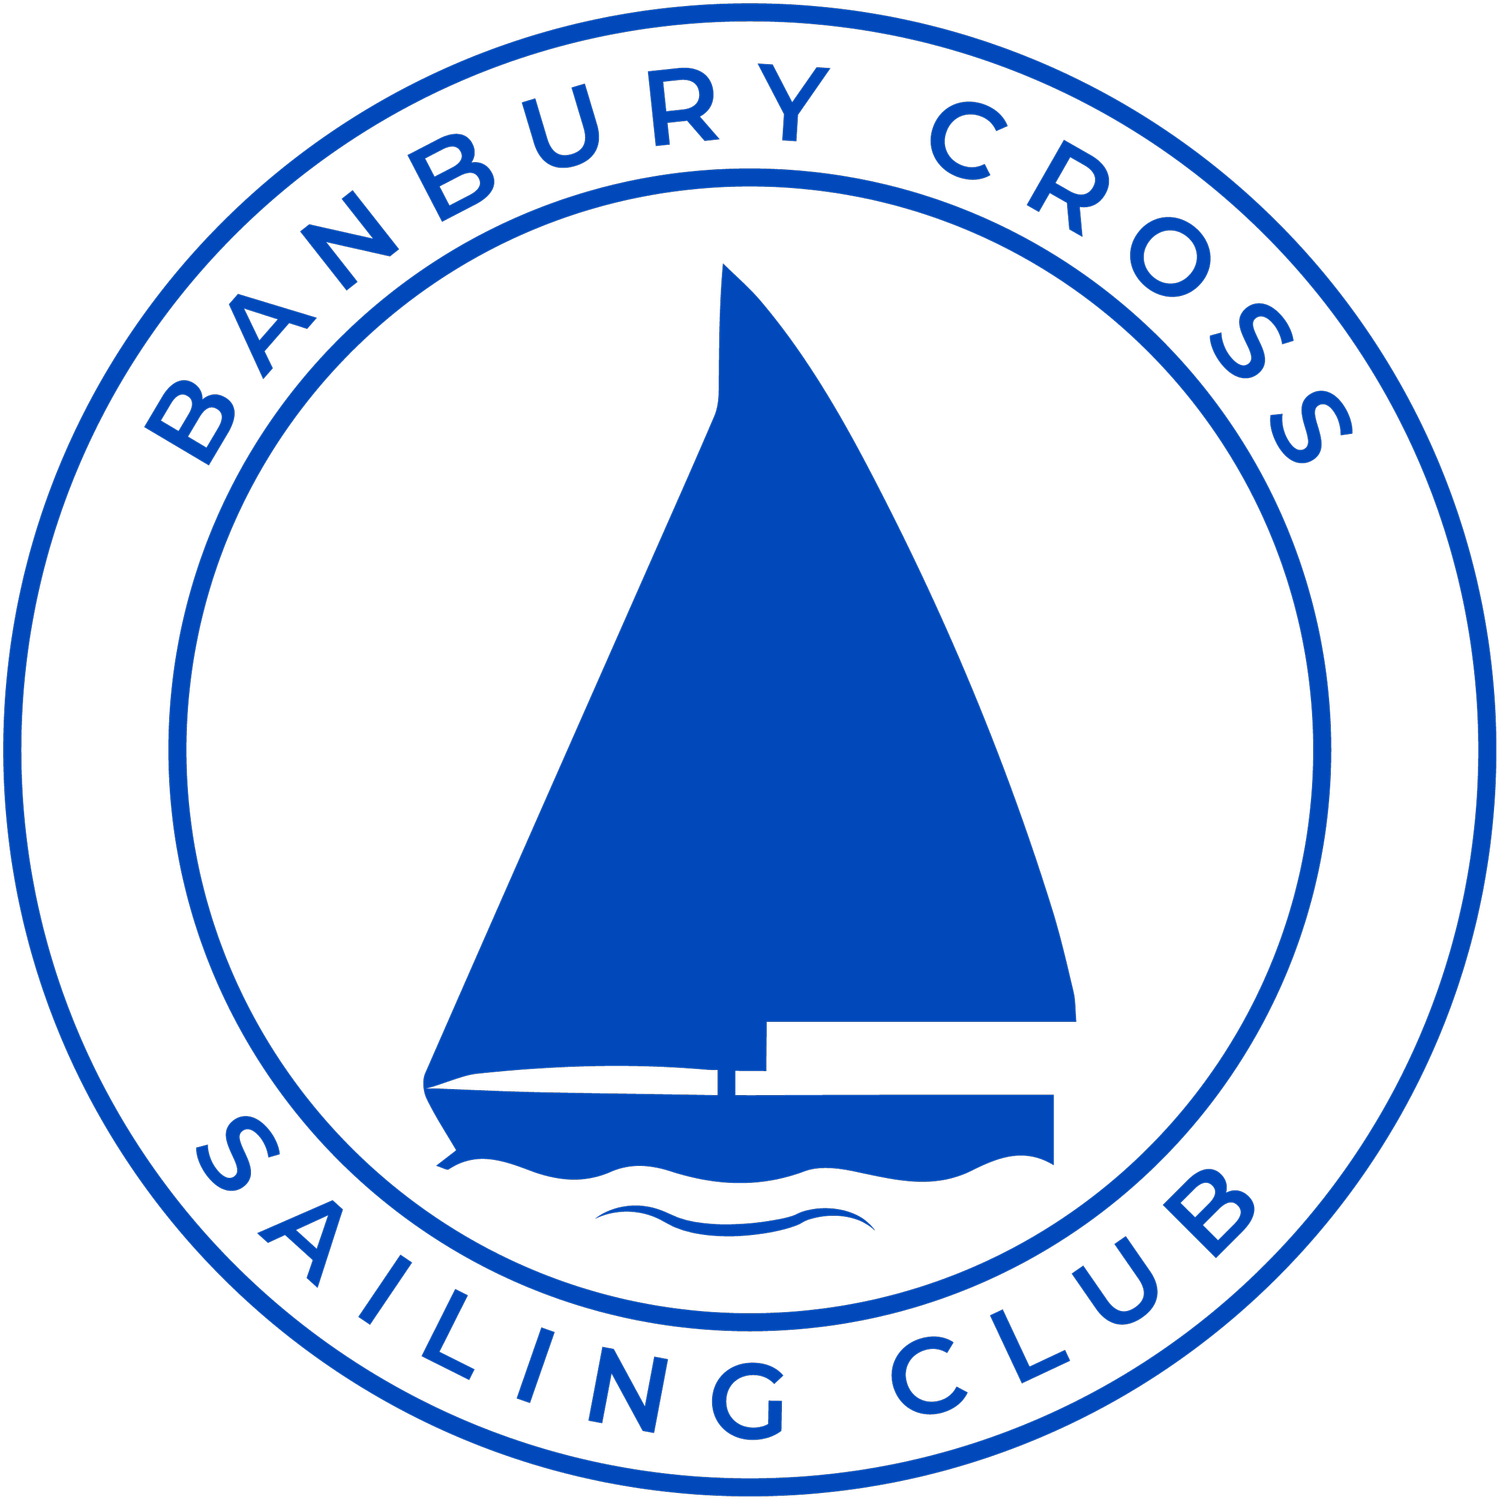 Banbury Cross Sailing Club